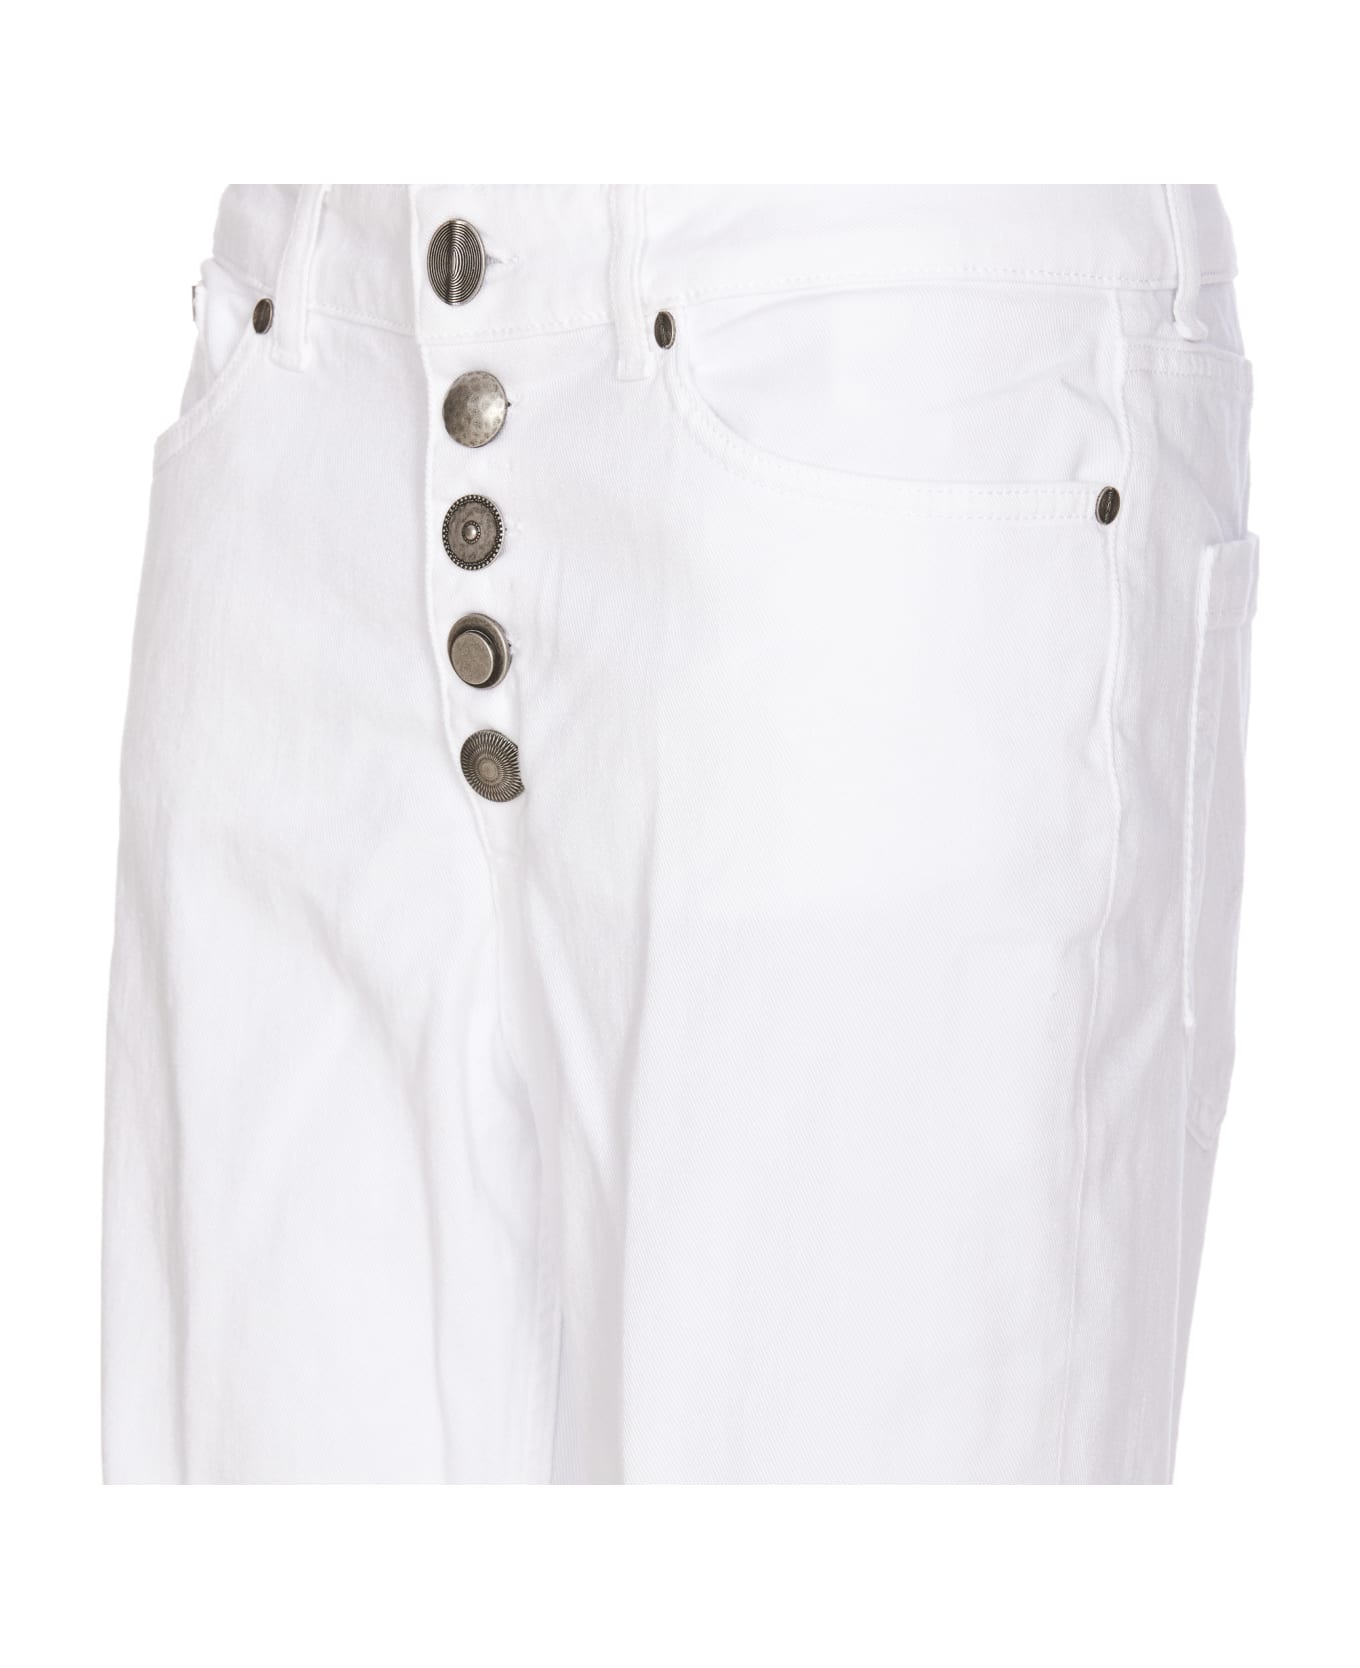 Dondup Koons Gioiello Denim Jeans - White